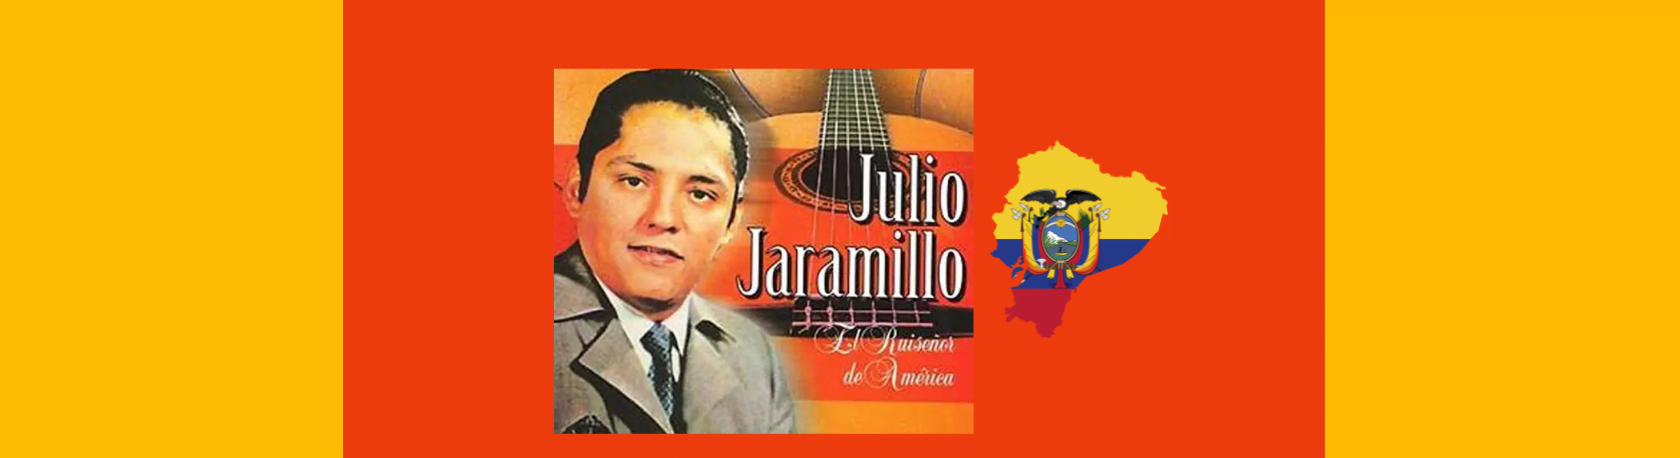 Easy Podcast: Julio Jaramillo, el ruiseñor de América - Easy Español